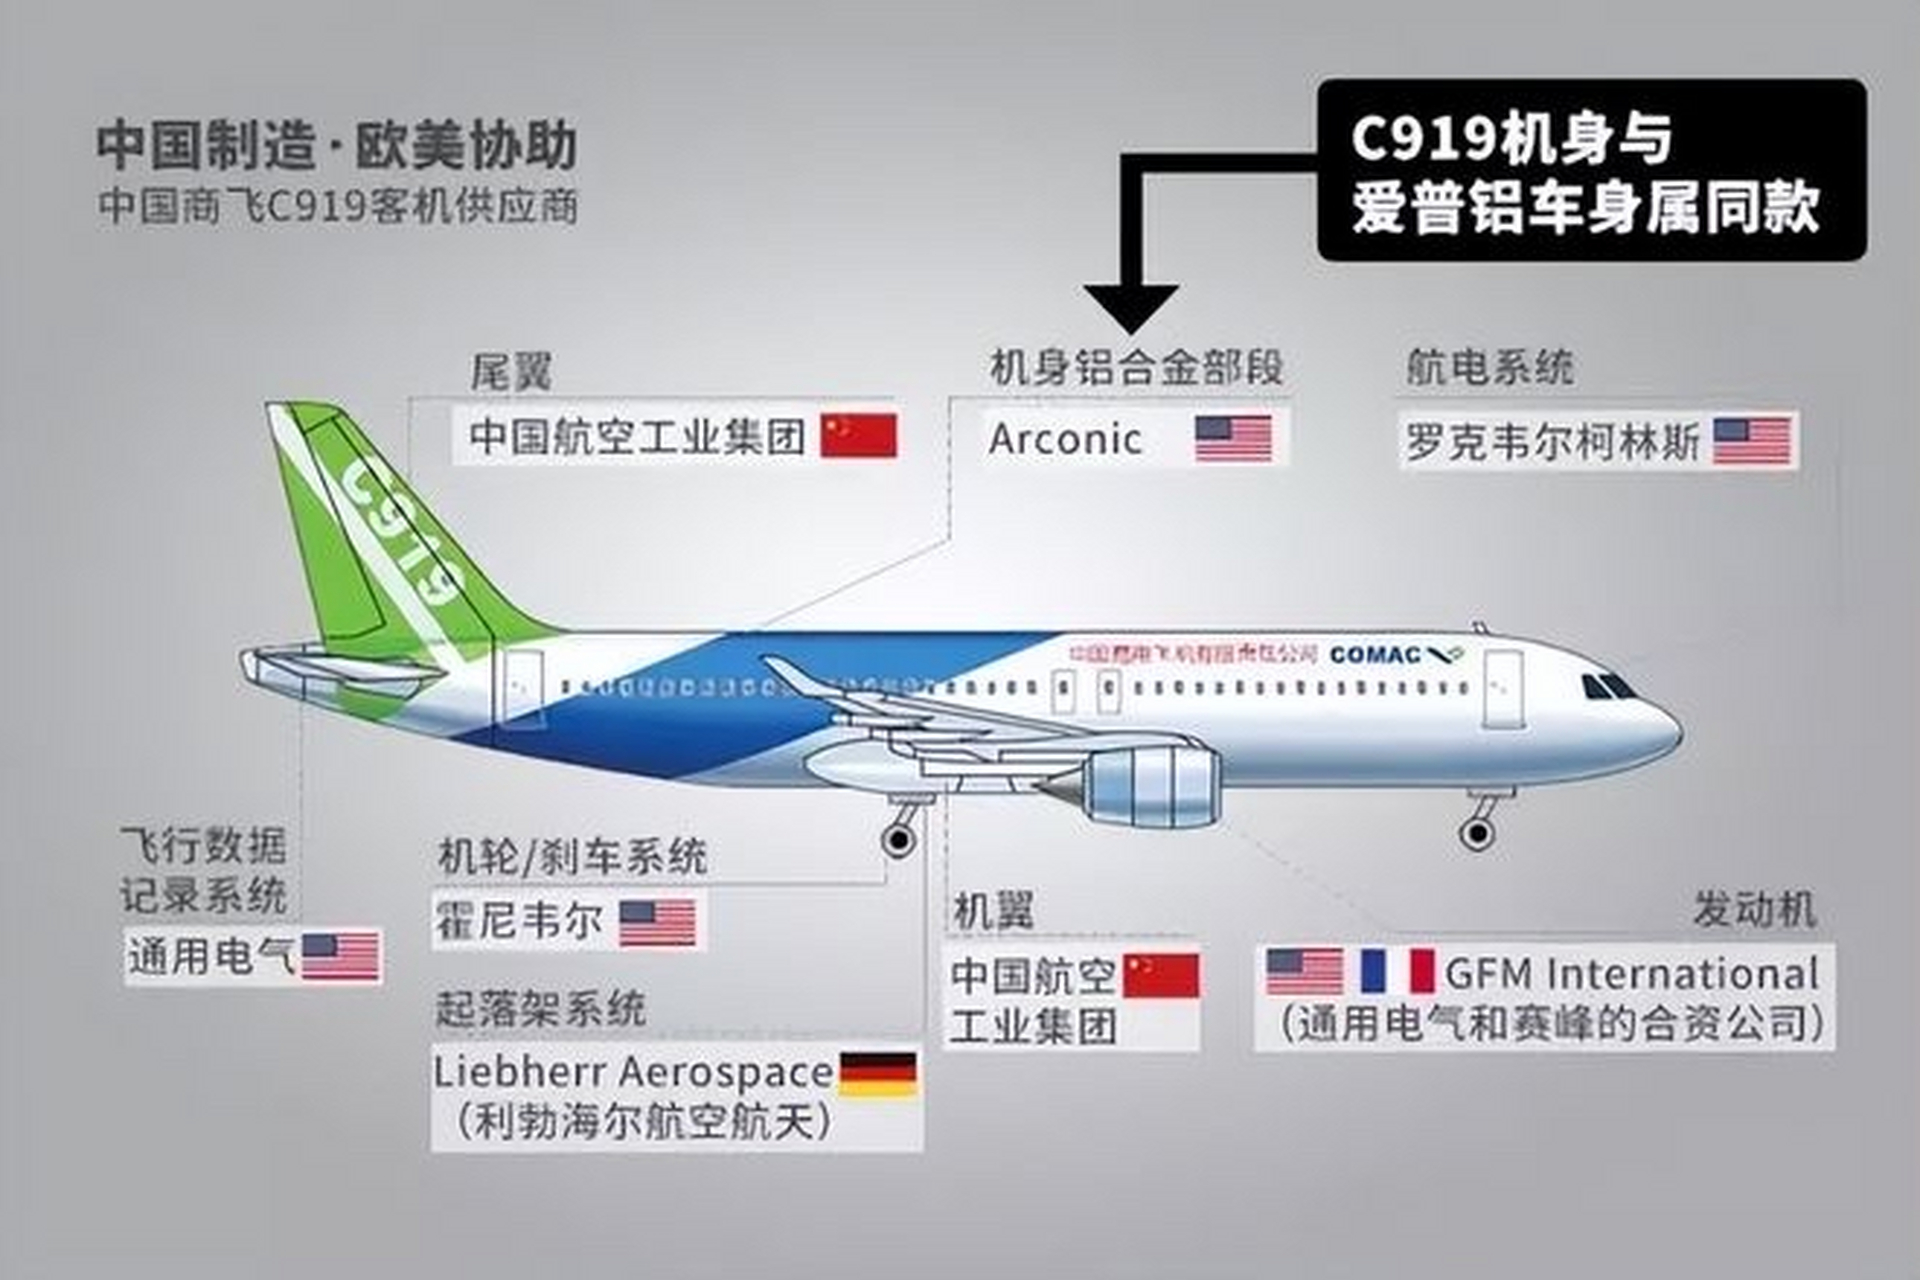 这说明大飞机制造是国际合作的产物,中国大飞机的核心技术仍控制在美